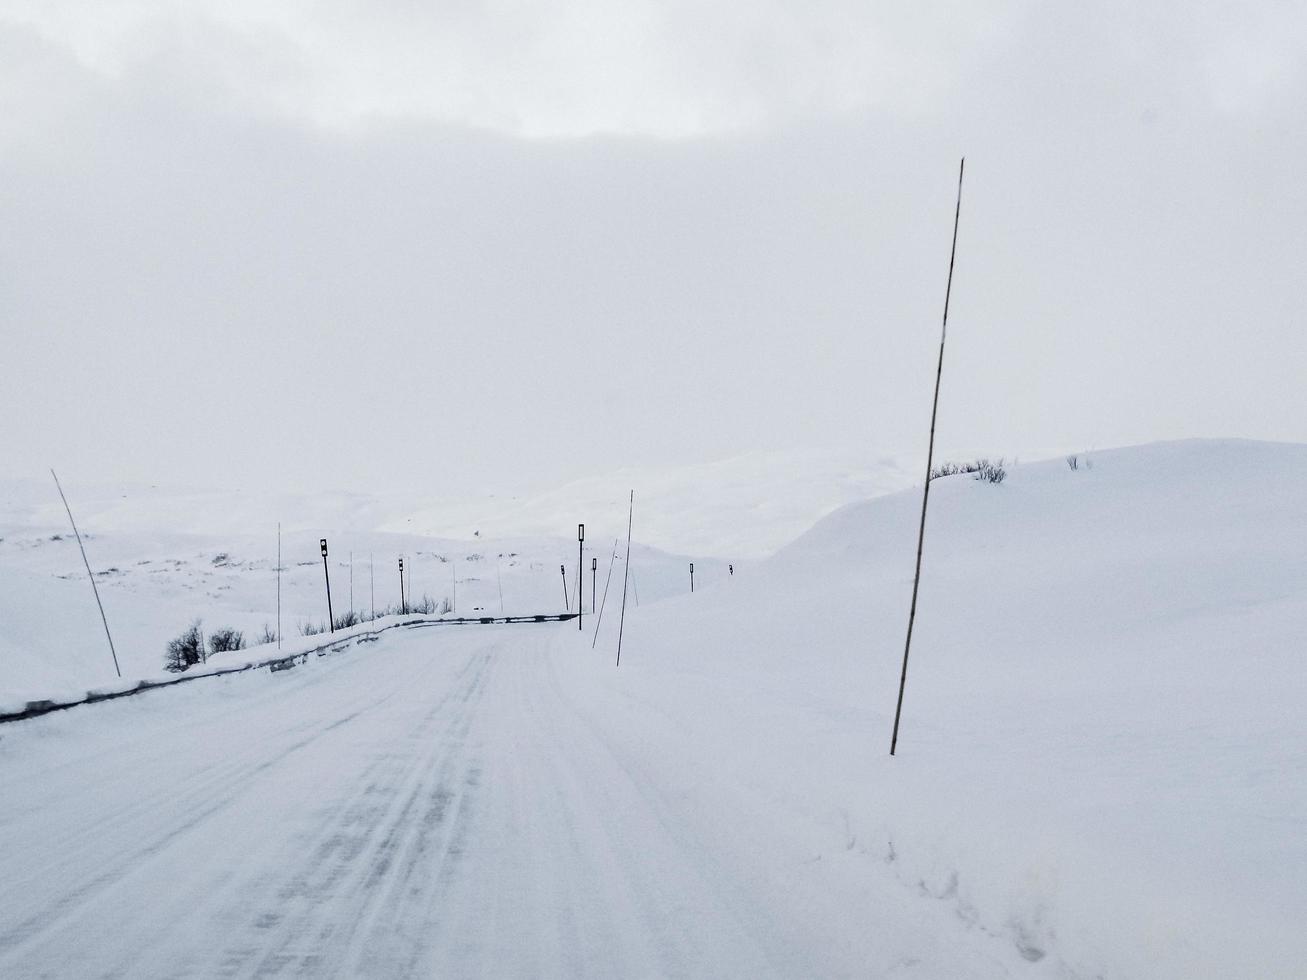 conduciendo por carreteras nevadas y paisajes en noruega. foto